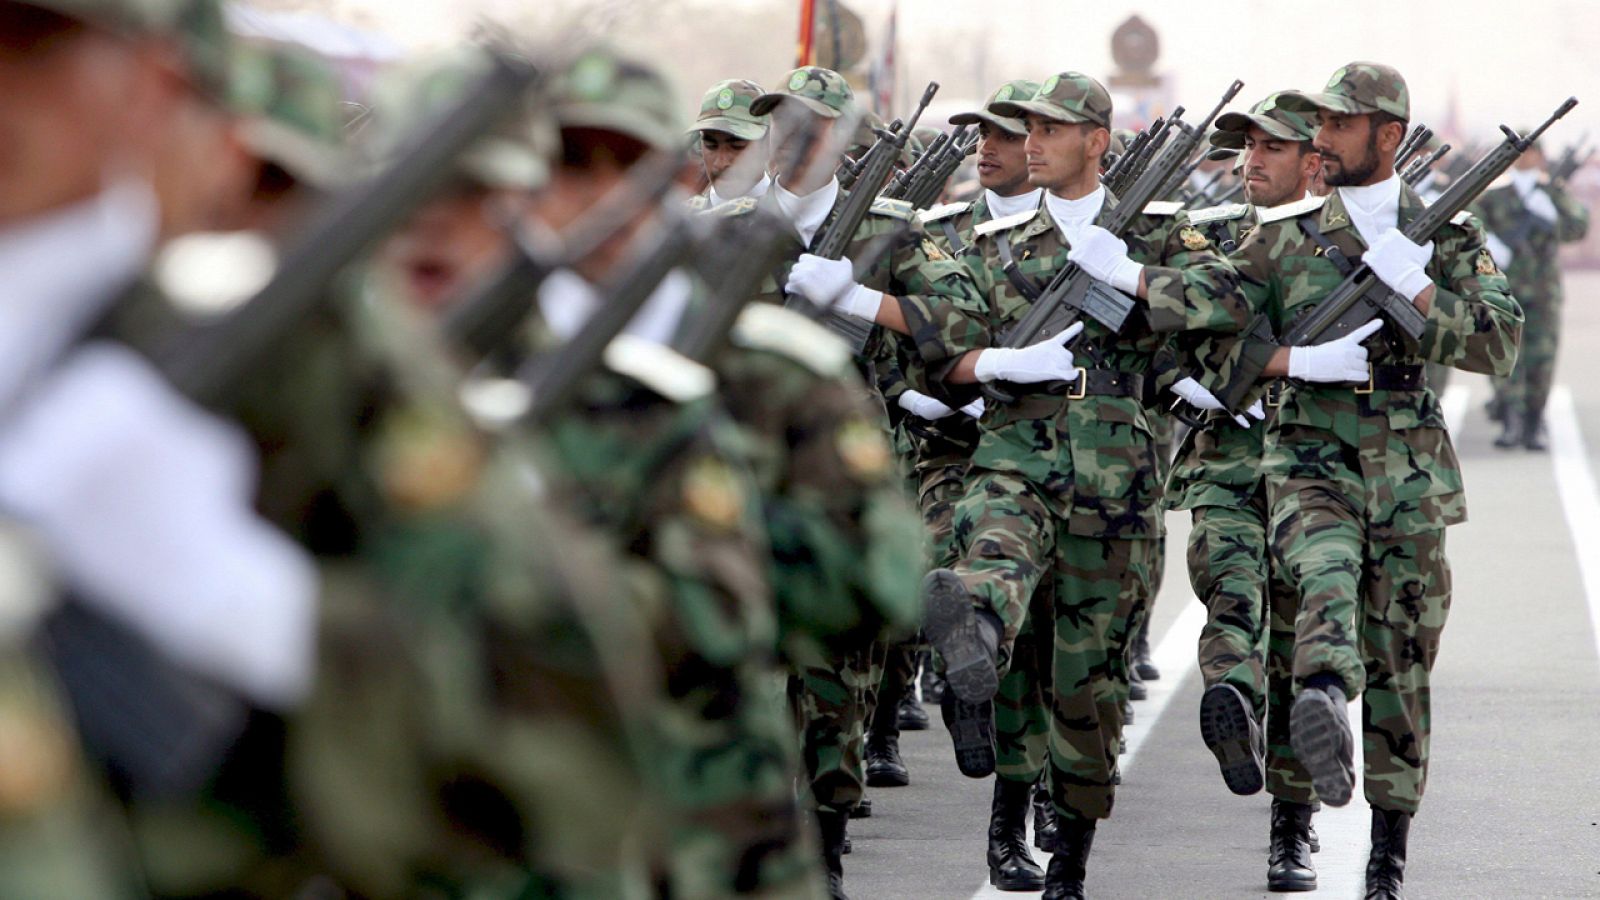 Soldados de las fuerzas de élite del ejército iraní desfilan durante una exhibición militar en Teherán en una imagen de archivo